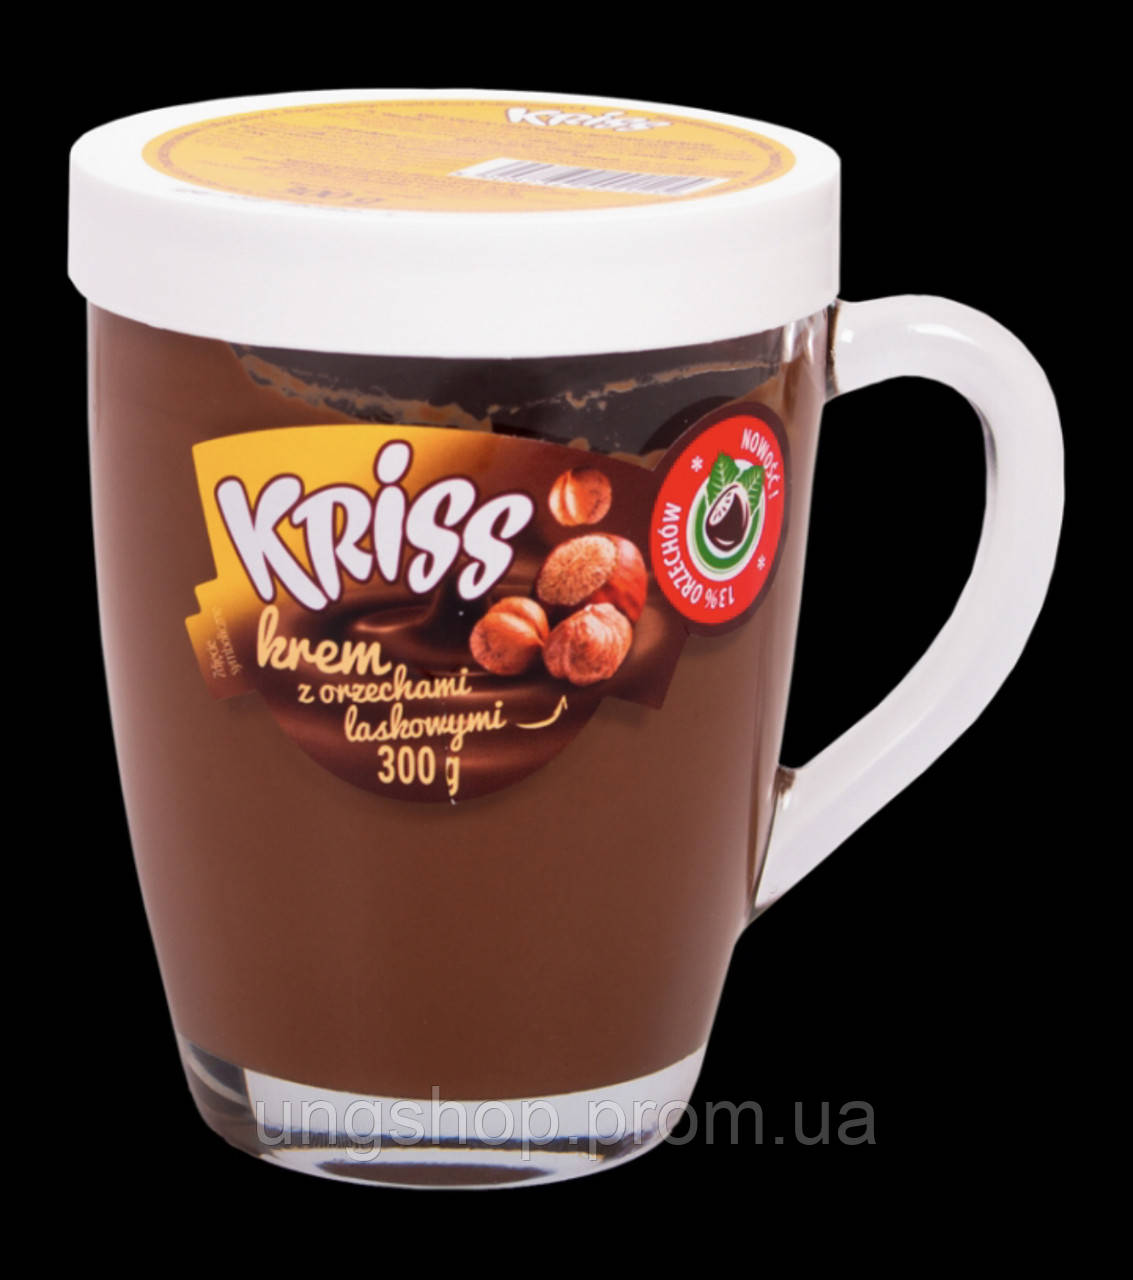 Шоколадно ореховая крем-паста в чашке Kriss krem z orzechami laskowymi 300g